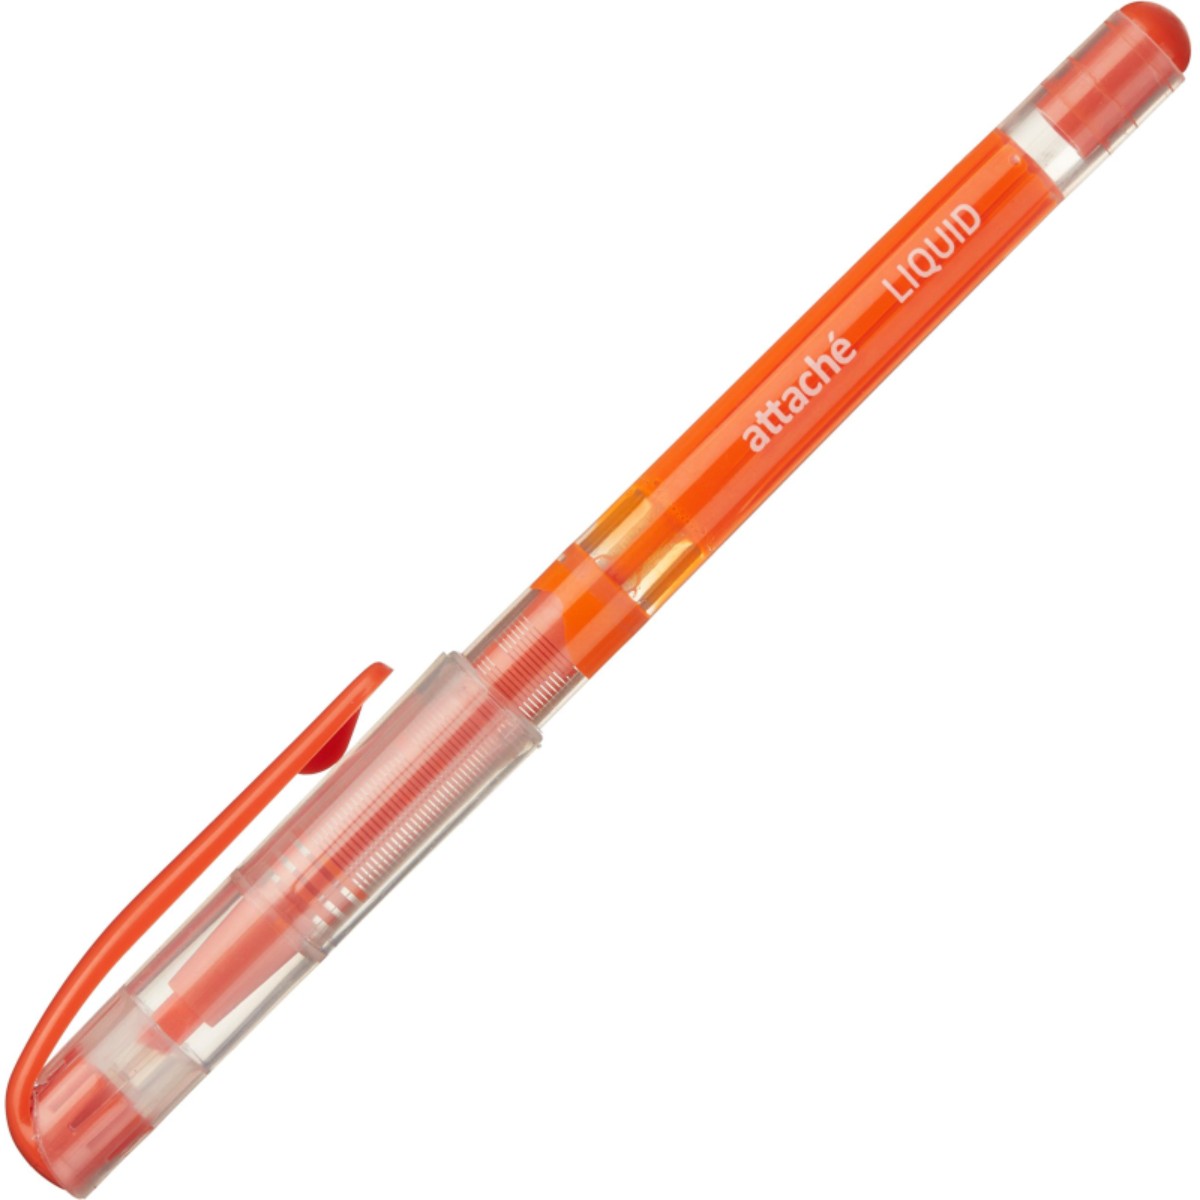 Маркер текстовыделитель Attache Liquid 1-4мм жидкие чернила оранжевый 15 шт - фото 2